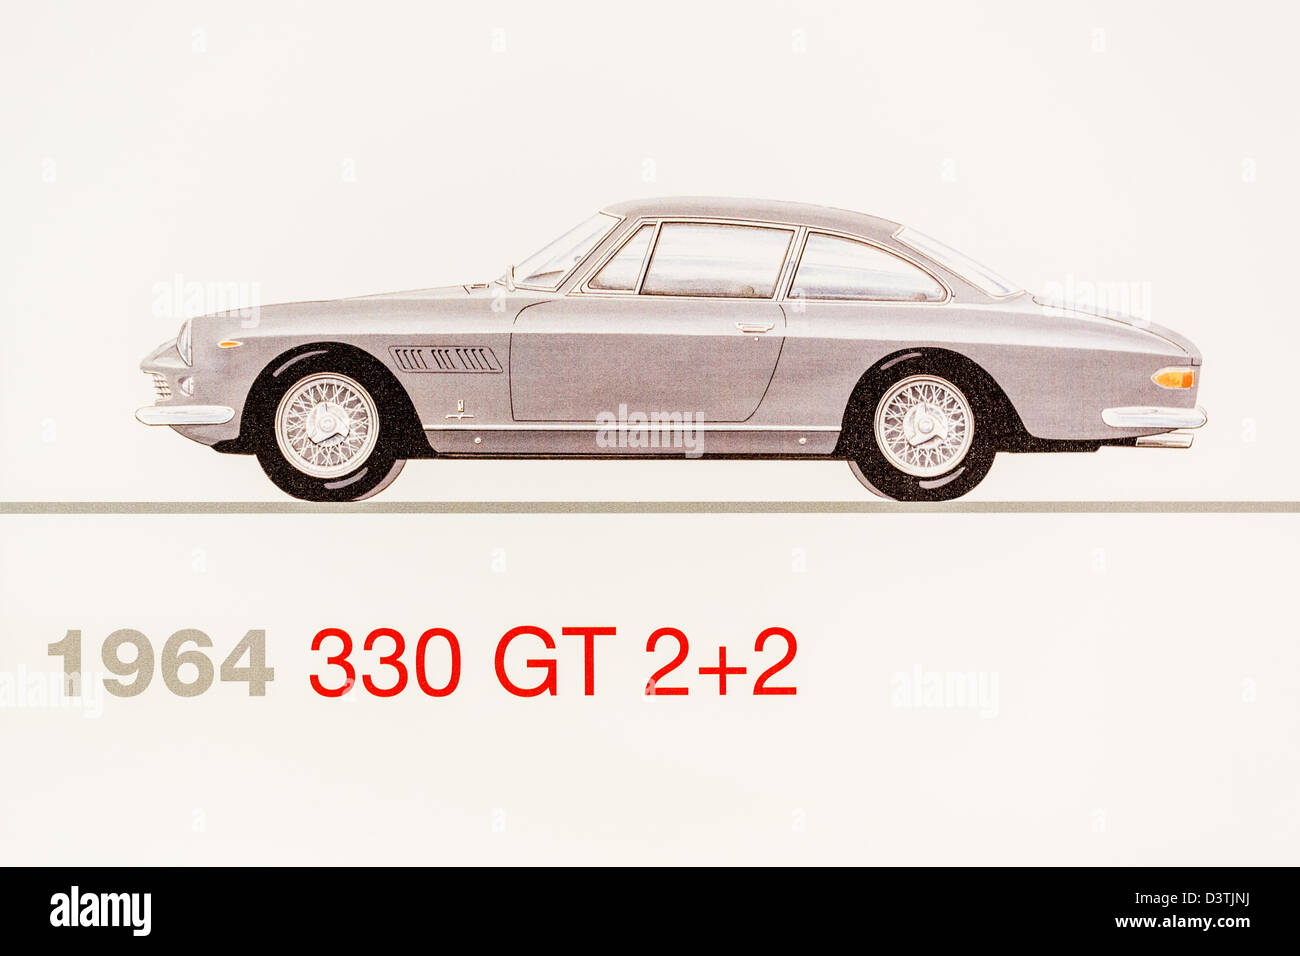 Graphic representation of a 1964 Ferrari 330 GT 2+2, Ferrari Museum, Maranello, Italy Stock Photo